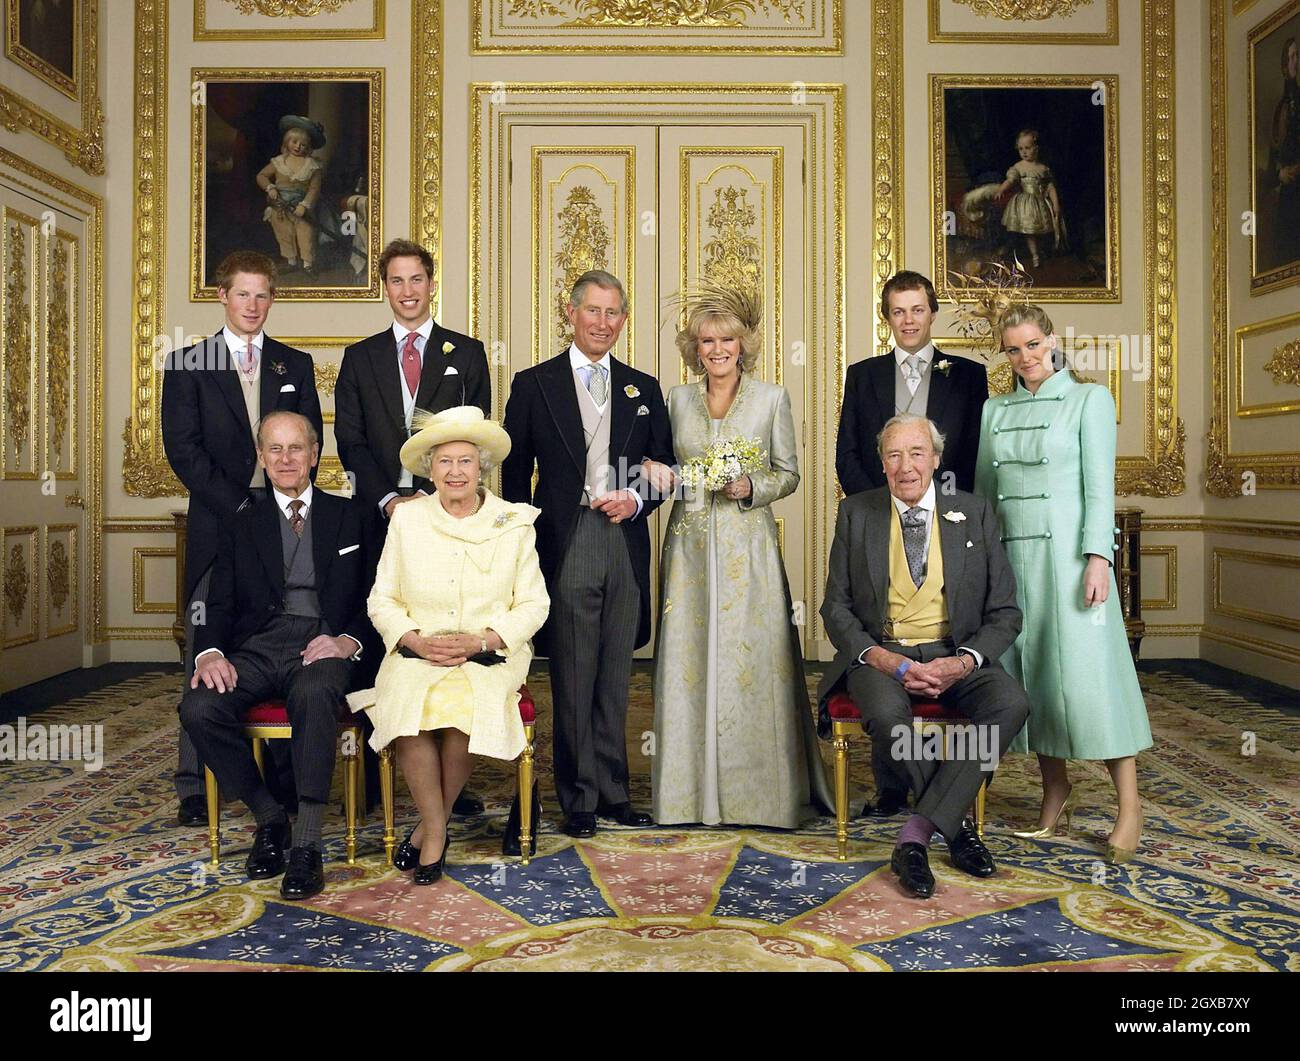 Der Prinz von Wales und seine neue Braut Camilla, Herzogin von Cornwall, mit ihren Familien (L-R hintere Reihe) Prinz Harry, Prinz William, Tom und Laura Parker Bowles (L-R vordere Reihe) Herzog von Edinburgh, die britische Königin Elizabeth II und Camilla's Vater Major Bruce Shand, Nach der Hochzeitszeremonie im White Drawing Room des Windsor Castle. Stockfoto